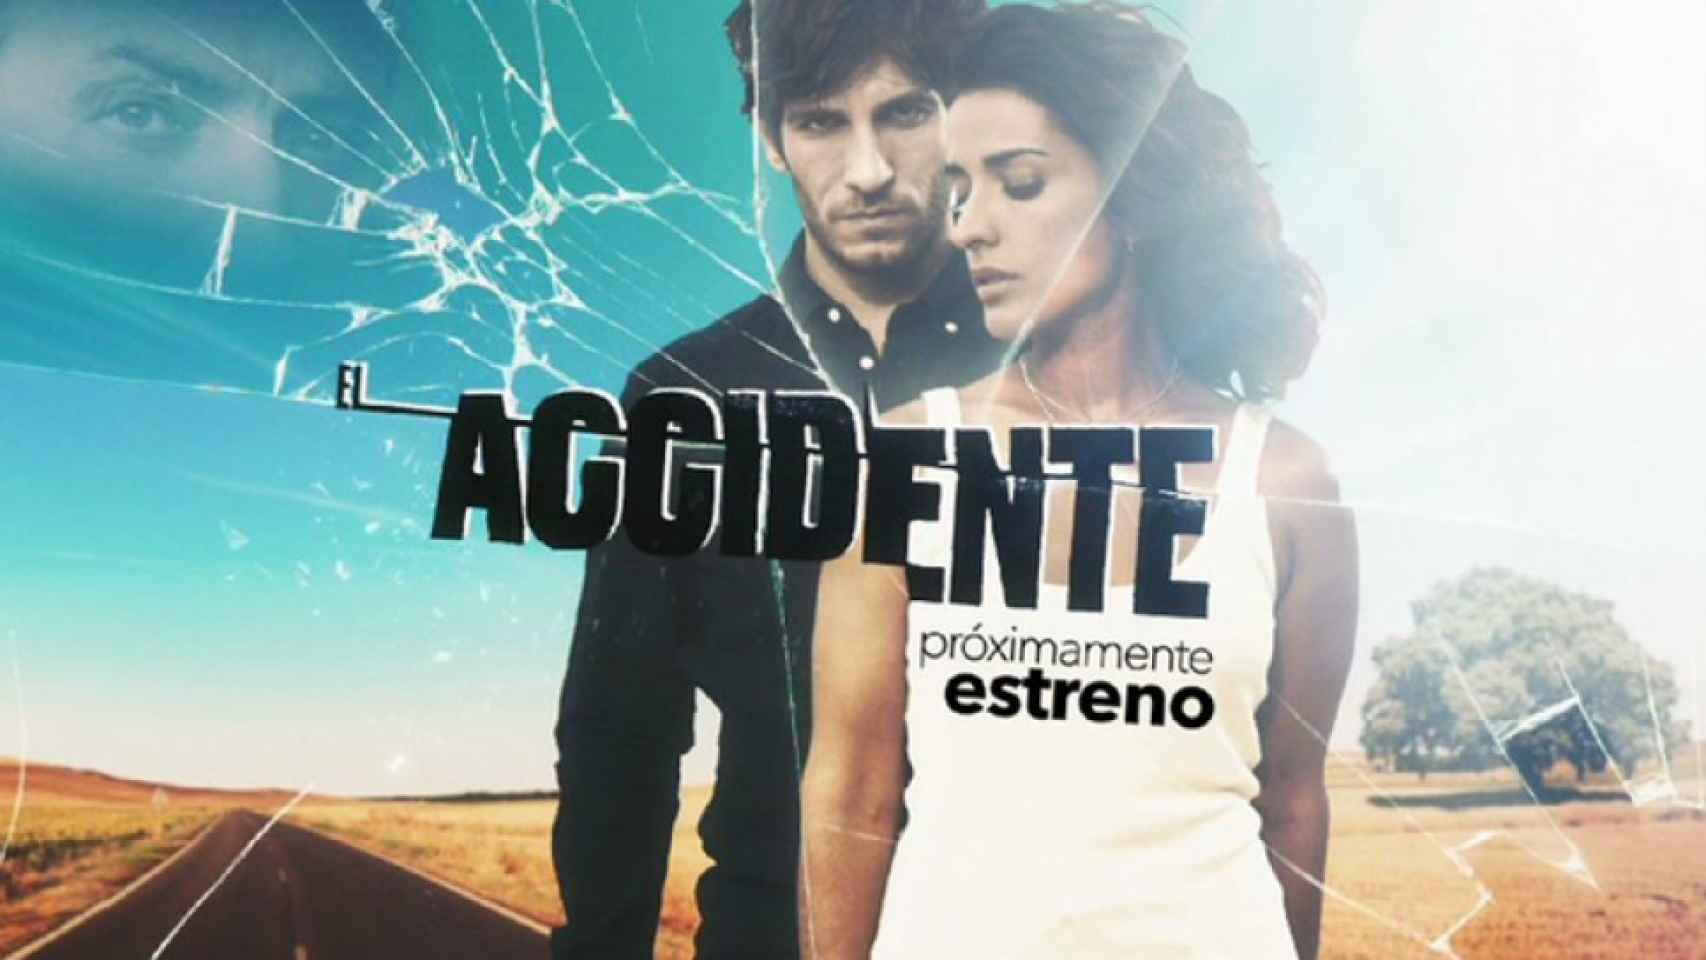 Telecinco estrena 'El accidente' el próximo martes contra 'Traición'